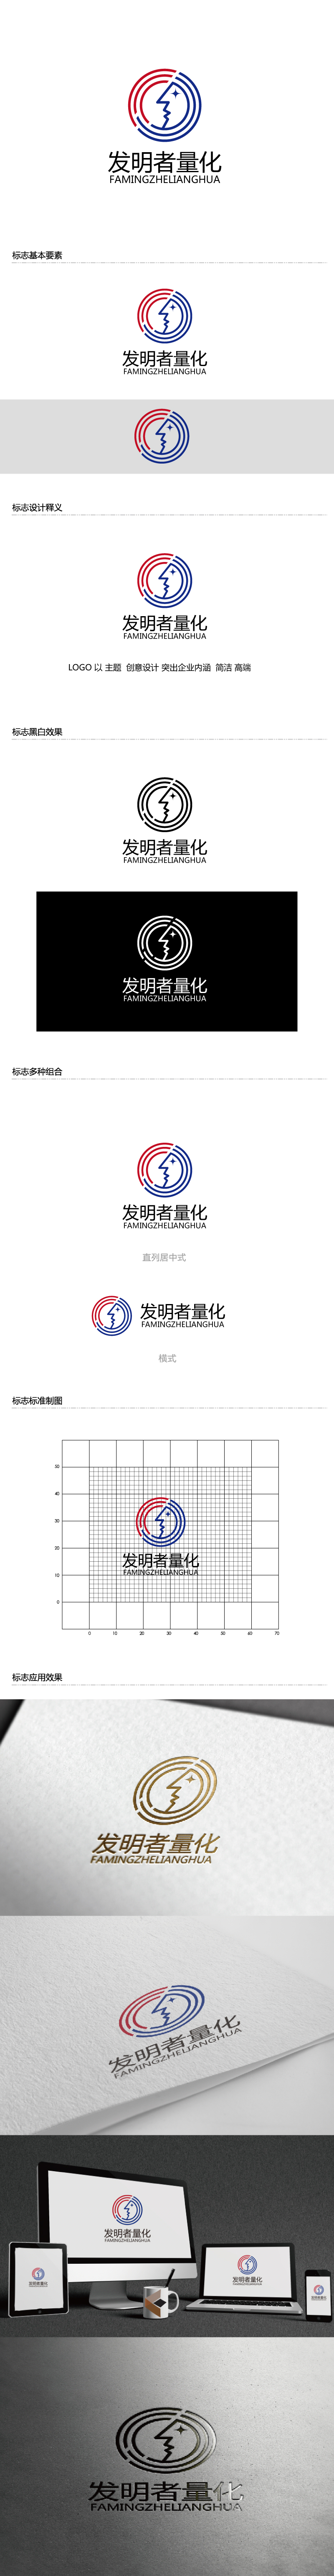 张俊的发明者量化logo设计